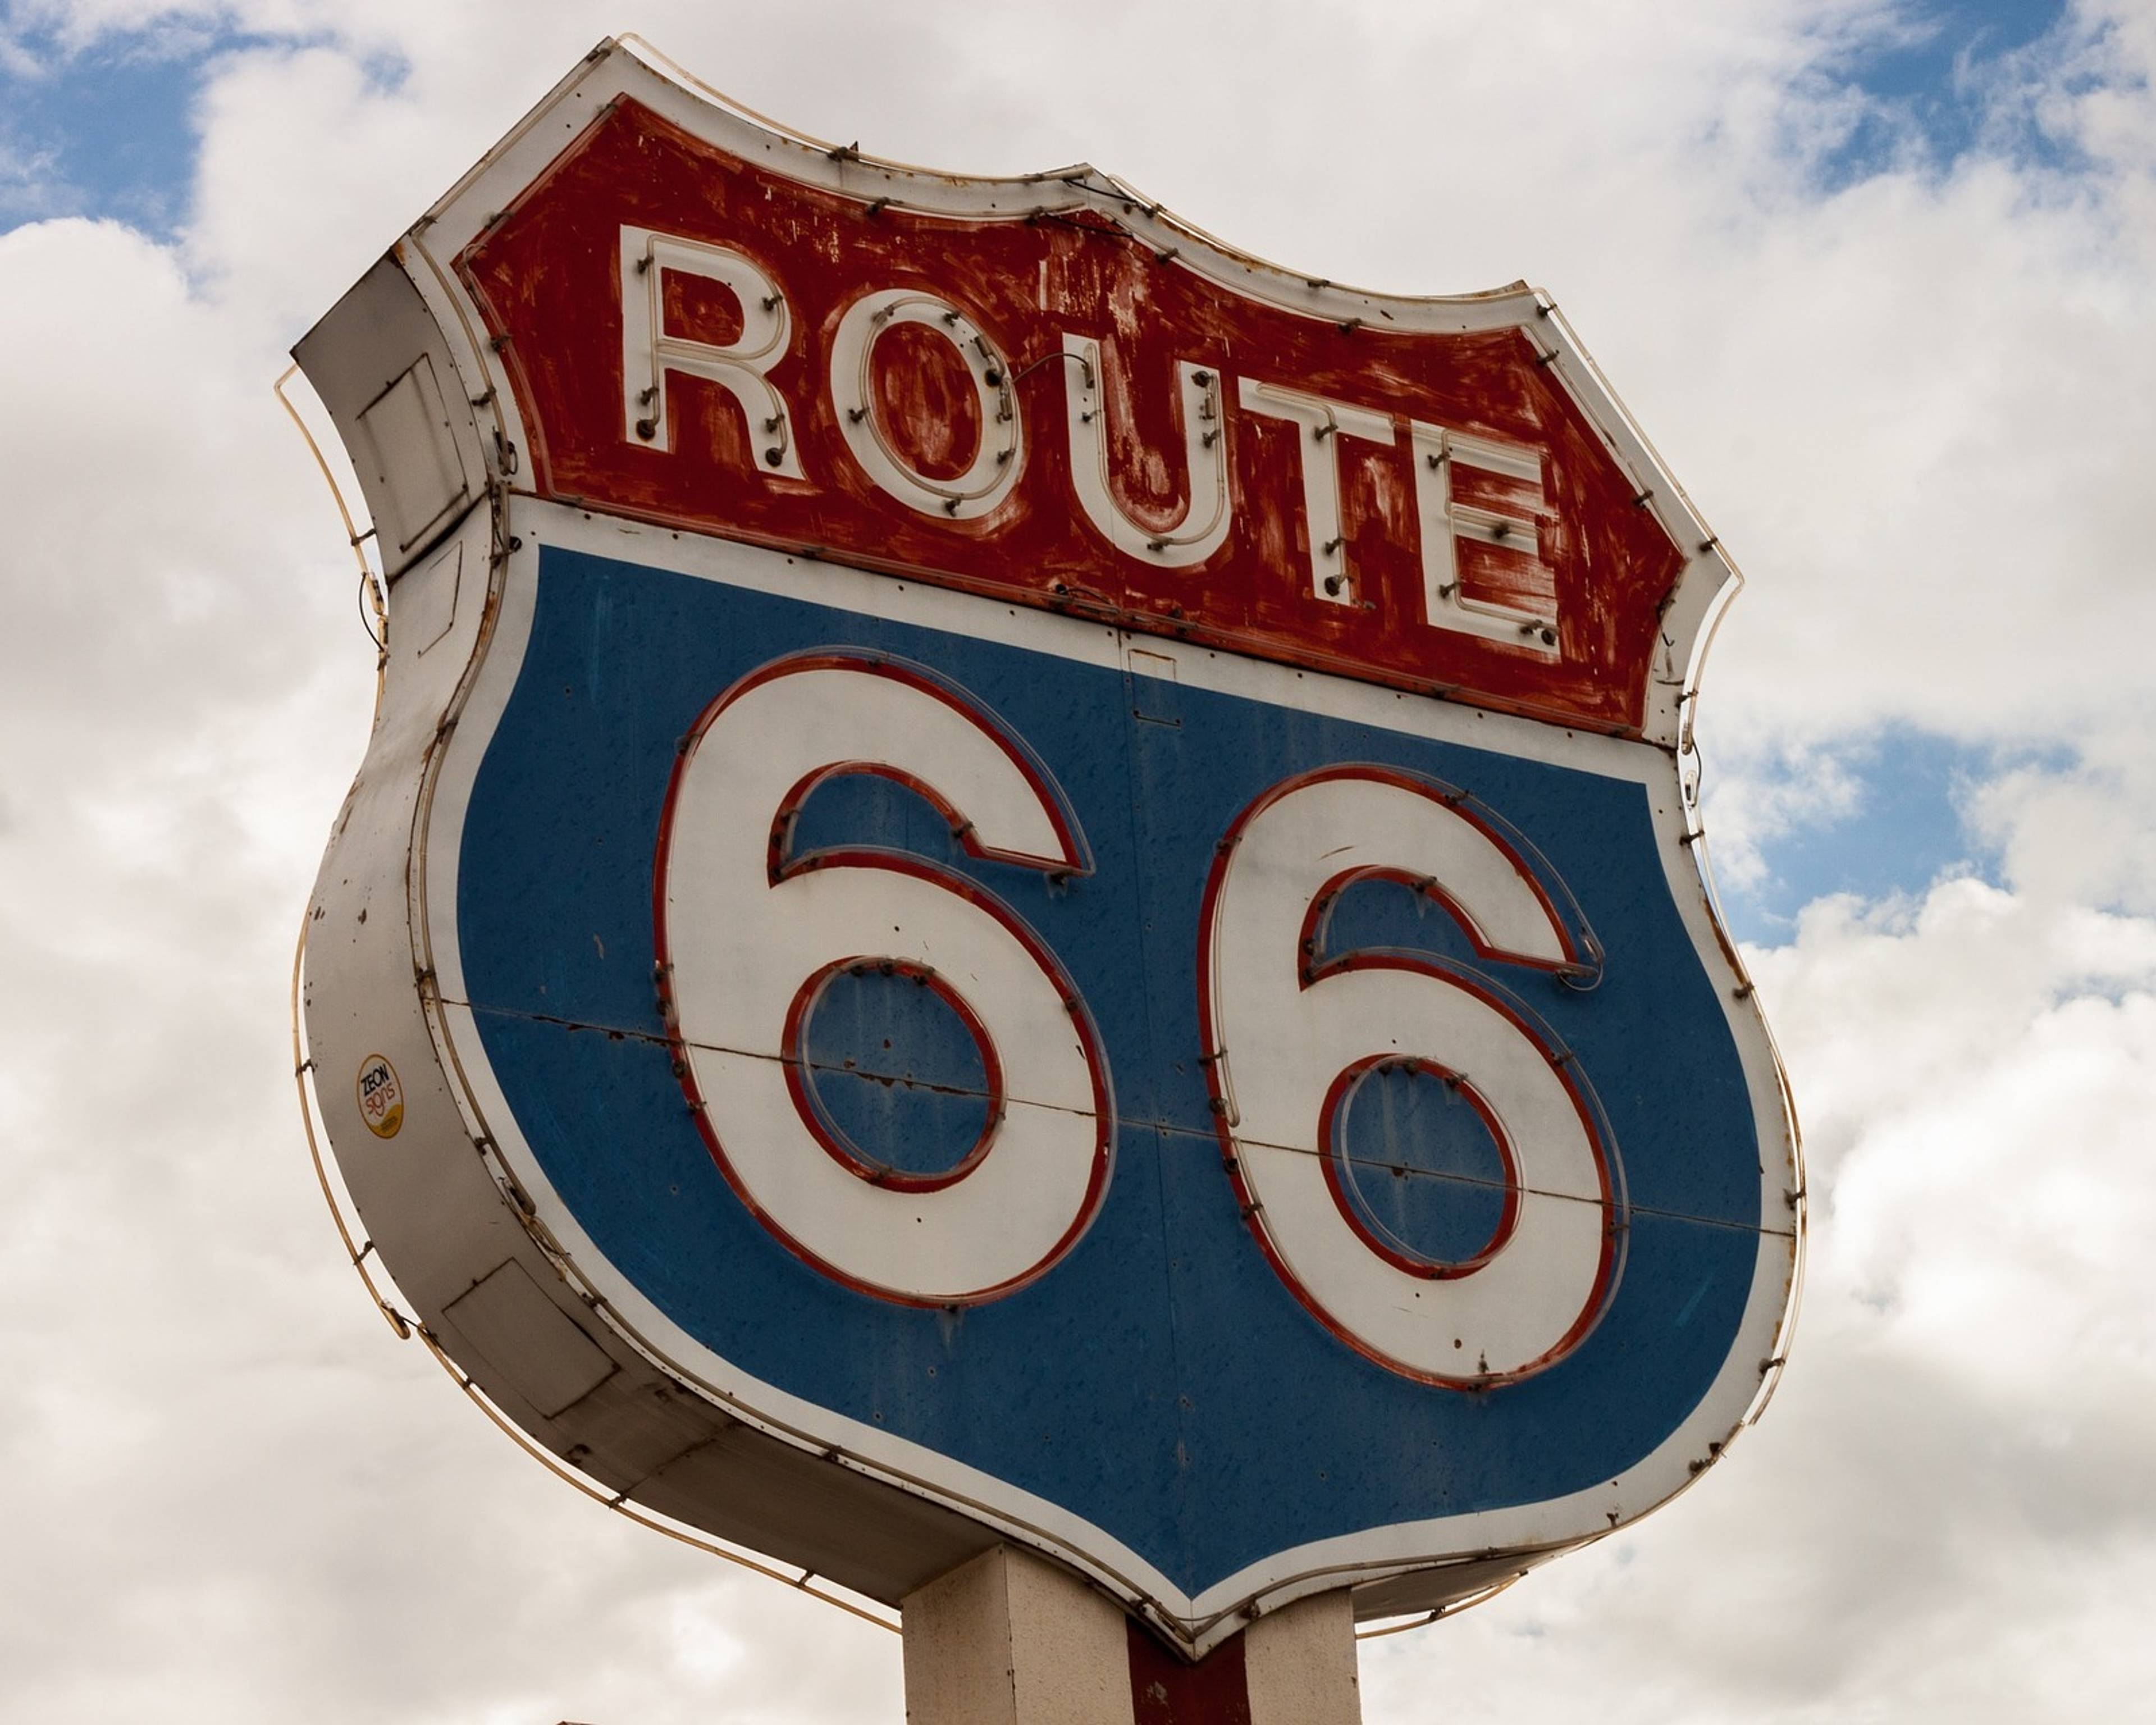 Traverser le pays sur la légendaire Route 66